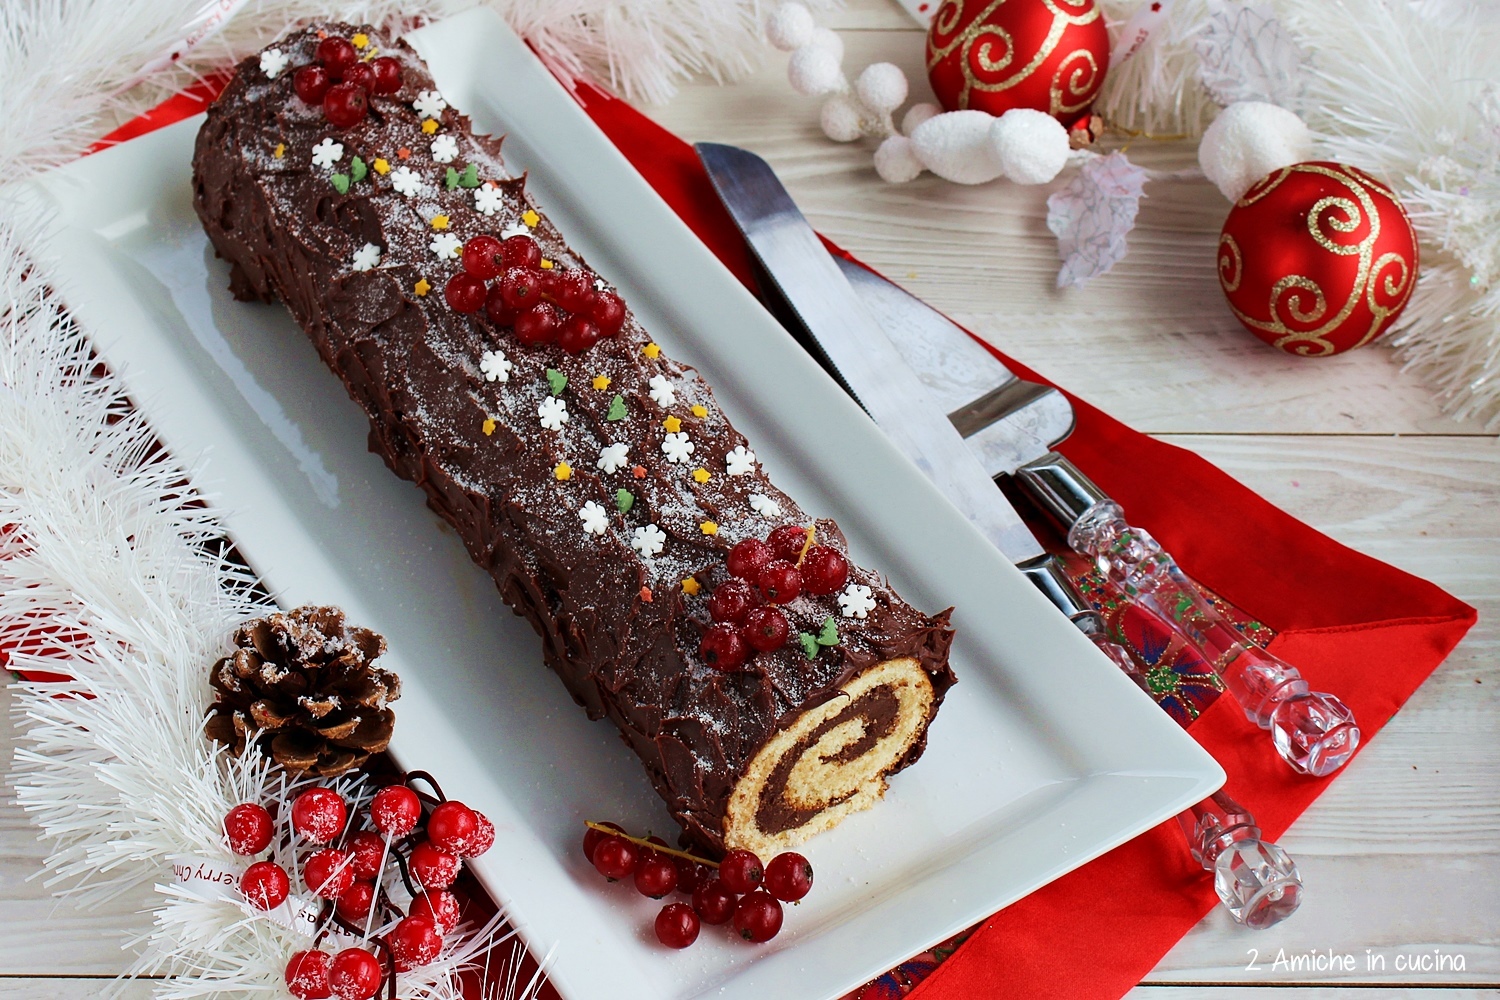 Ricetta Tronchetto Di Natale Per 10 Persone.Tronchetto Al Cioccolato Buche De Noel 2 Amiche In Cucina